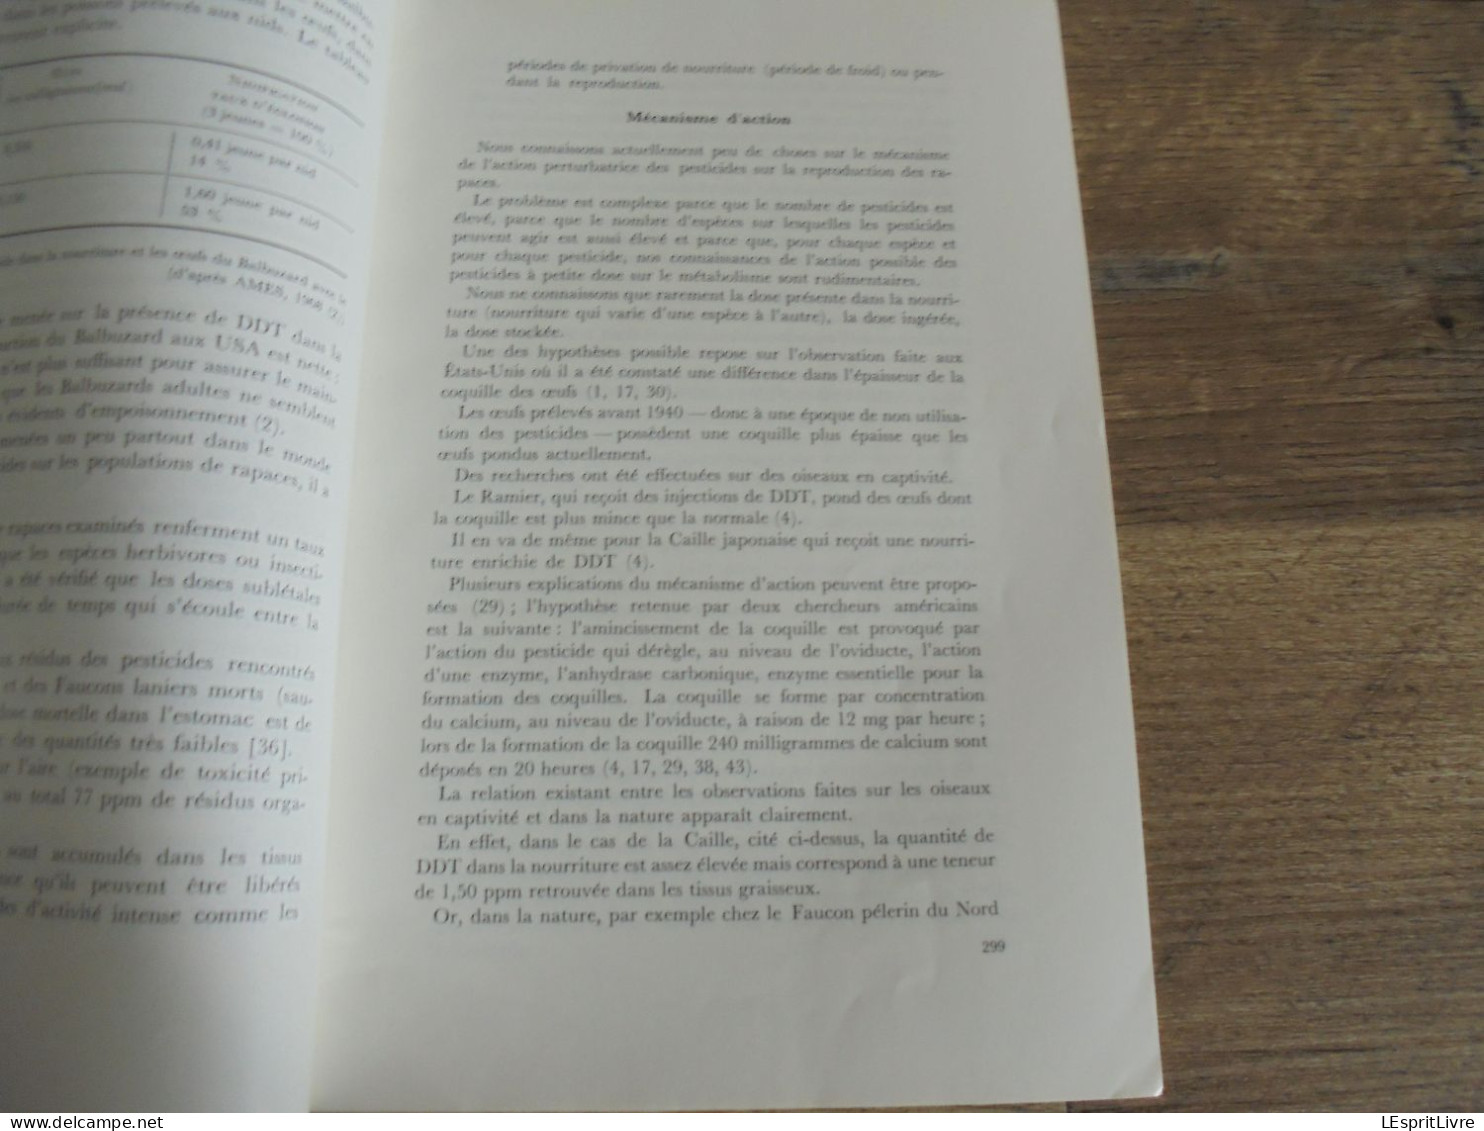 LES NATURALISTES BELGES N° 6 Année 1972 Régionalisme Pesticides Oiseaux De Proie Cotentin Végétation Botanique Flore - Belgium